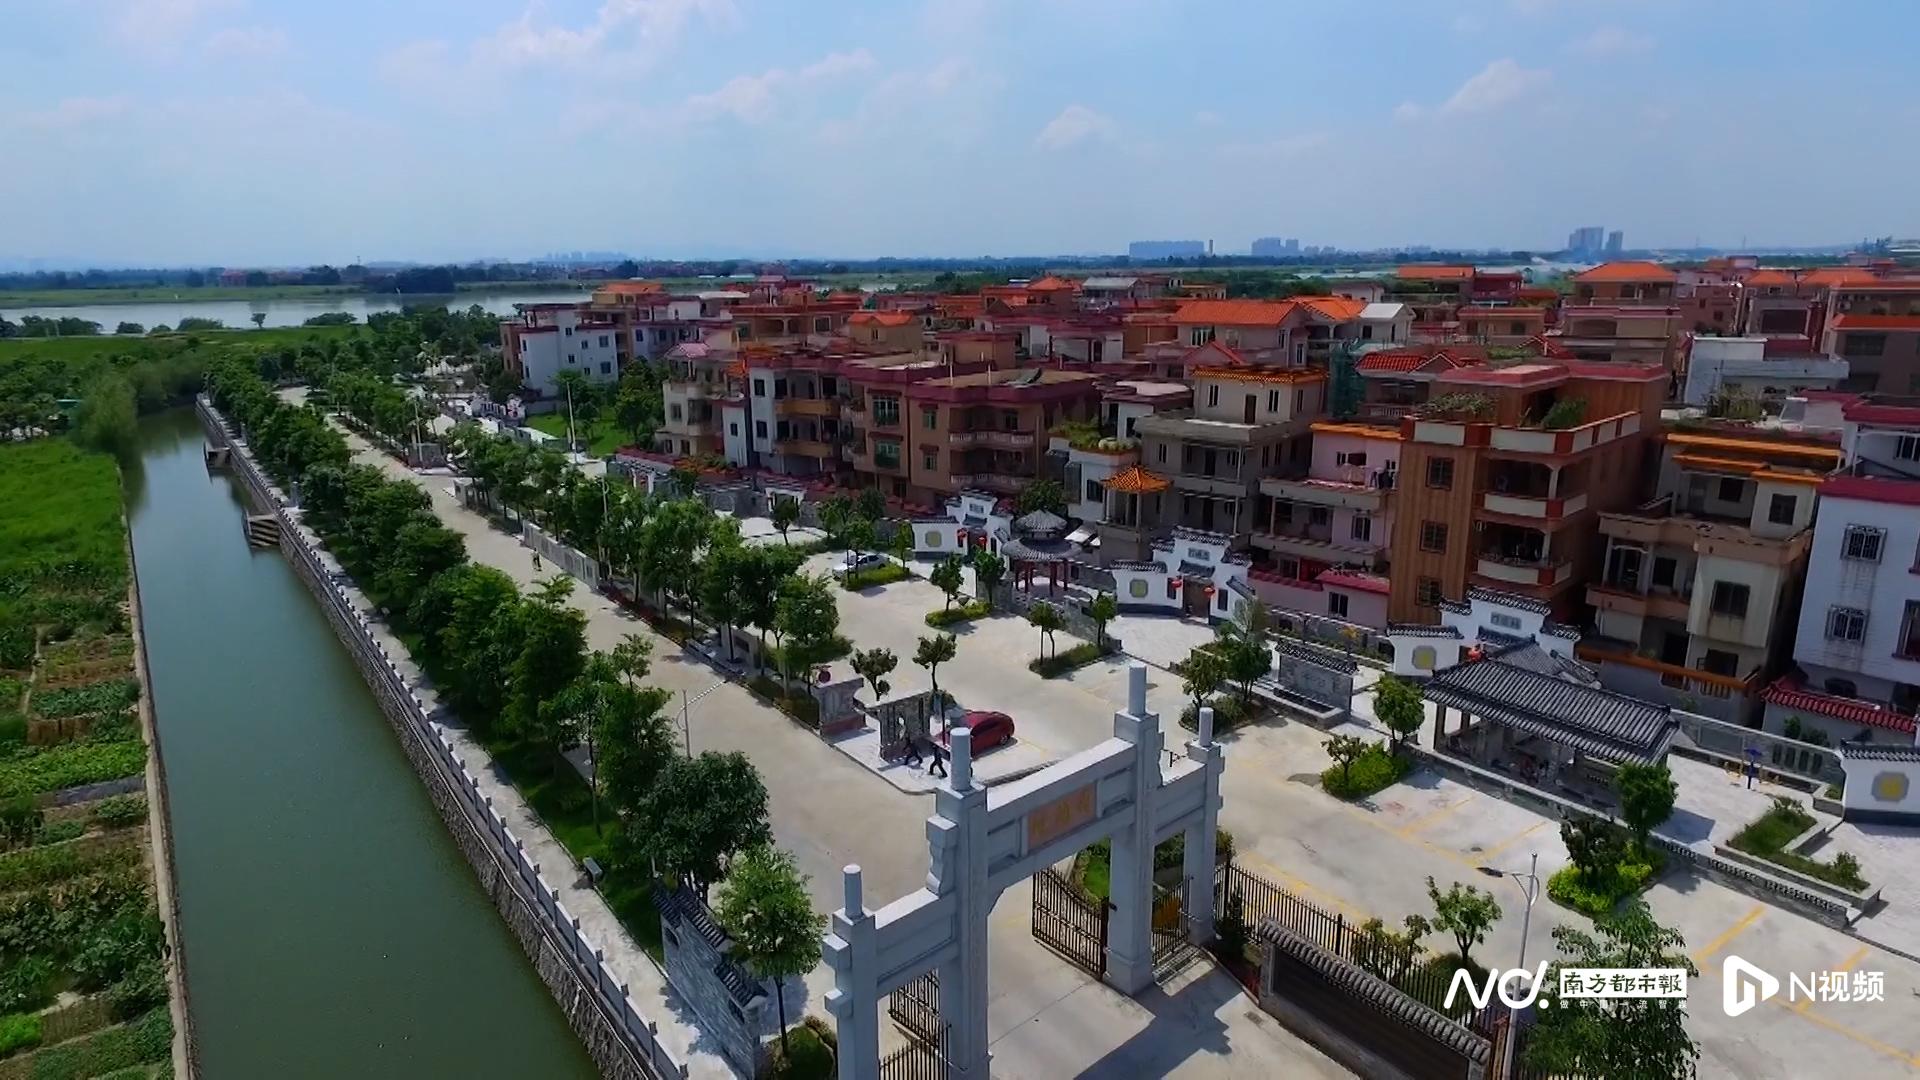 紫南村曾先后荣获“中国十佳小康村”“全国文明村镇”“中国最美村镇”等荣誉称号。